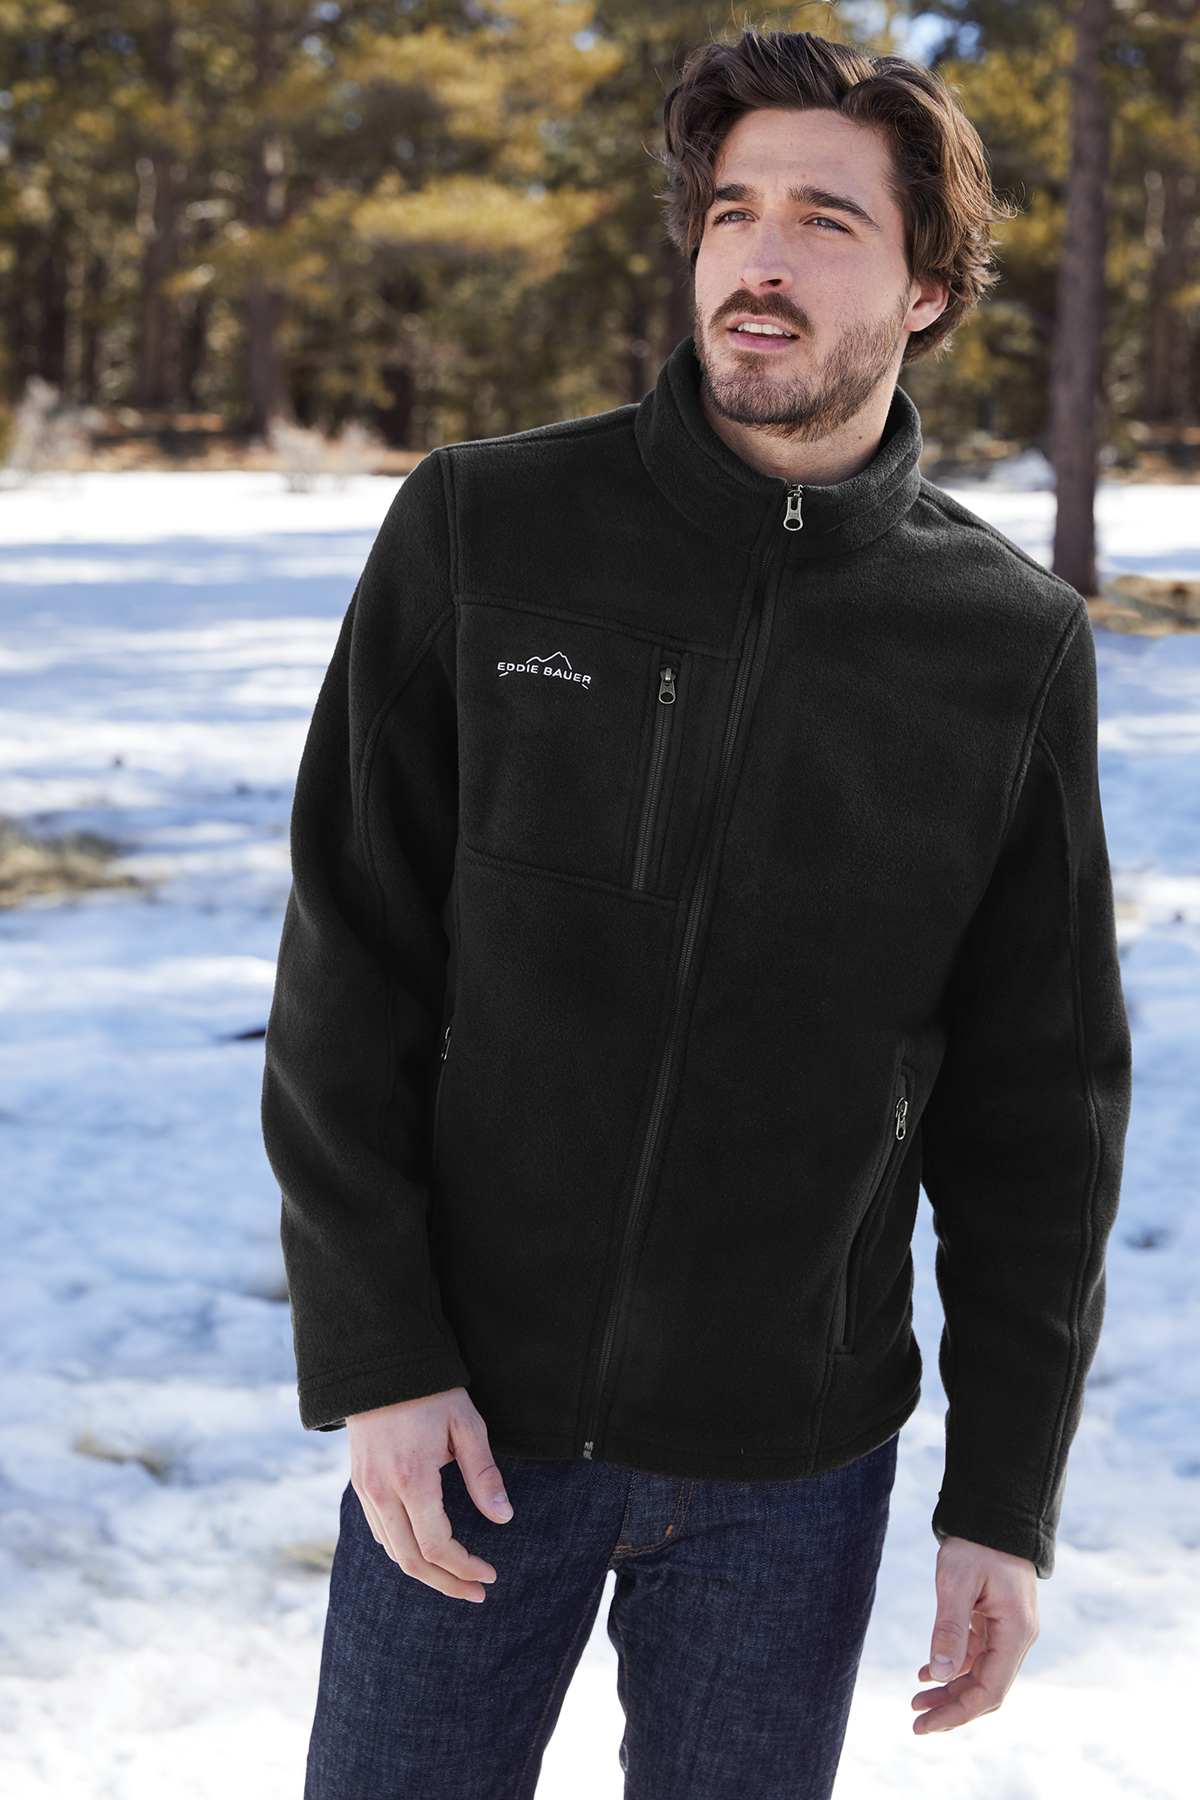 Eddie Bauer - Full-Zip Fleece Jacket | Product | SanMar